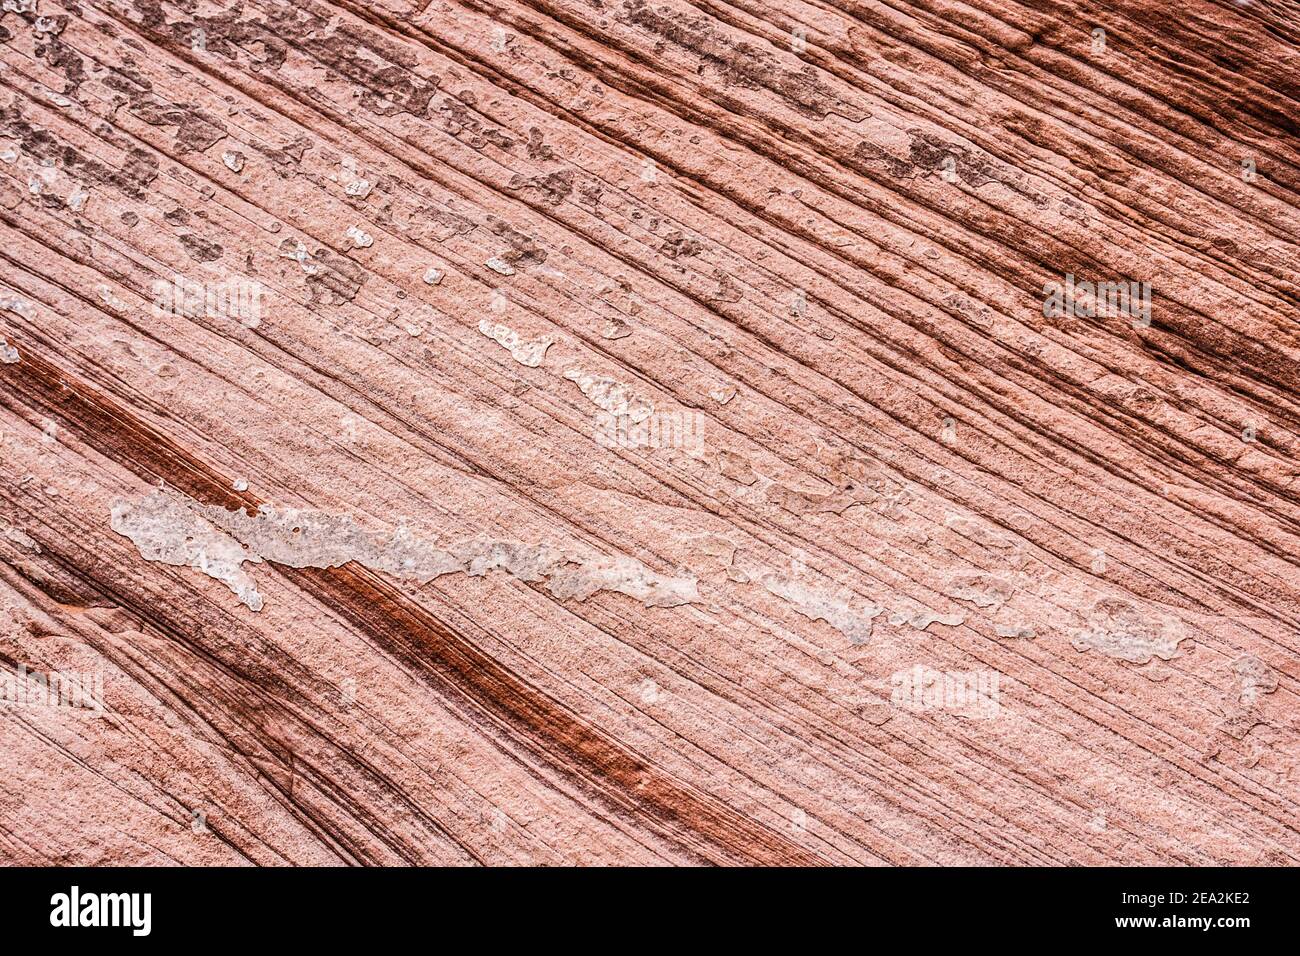 Texture de la roche de grès avec un modèle de couches diagonales irrégulières formées par les processus d'aéolian. Image en noir et blanc. Banque D'Images